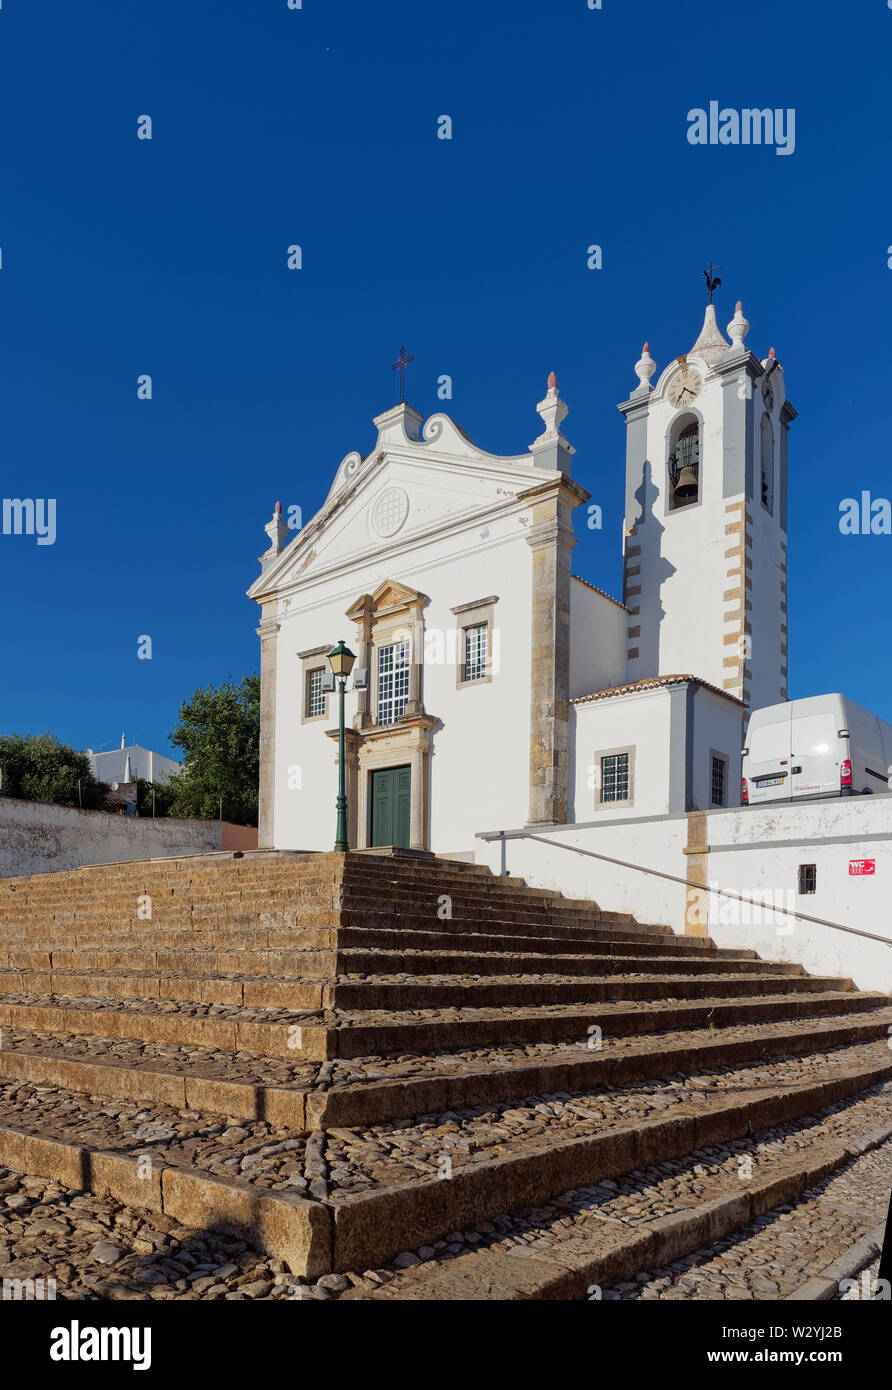 La Paropquia de São Martinho elevado en algunas terrazas pasos de adoquines en el centro de la ciudad de Estoi en el Algarve portugués, cerca de Faro. Foto de stock